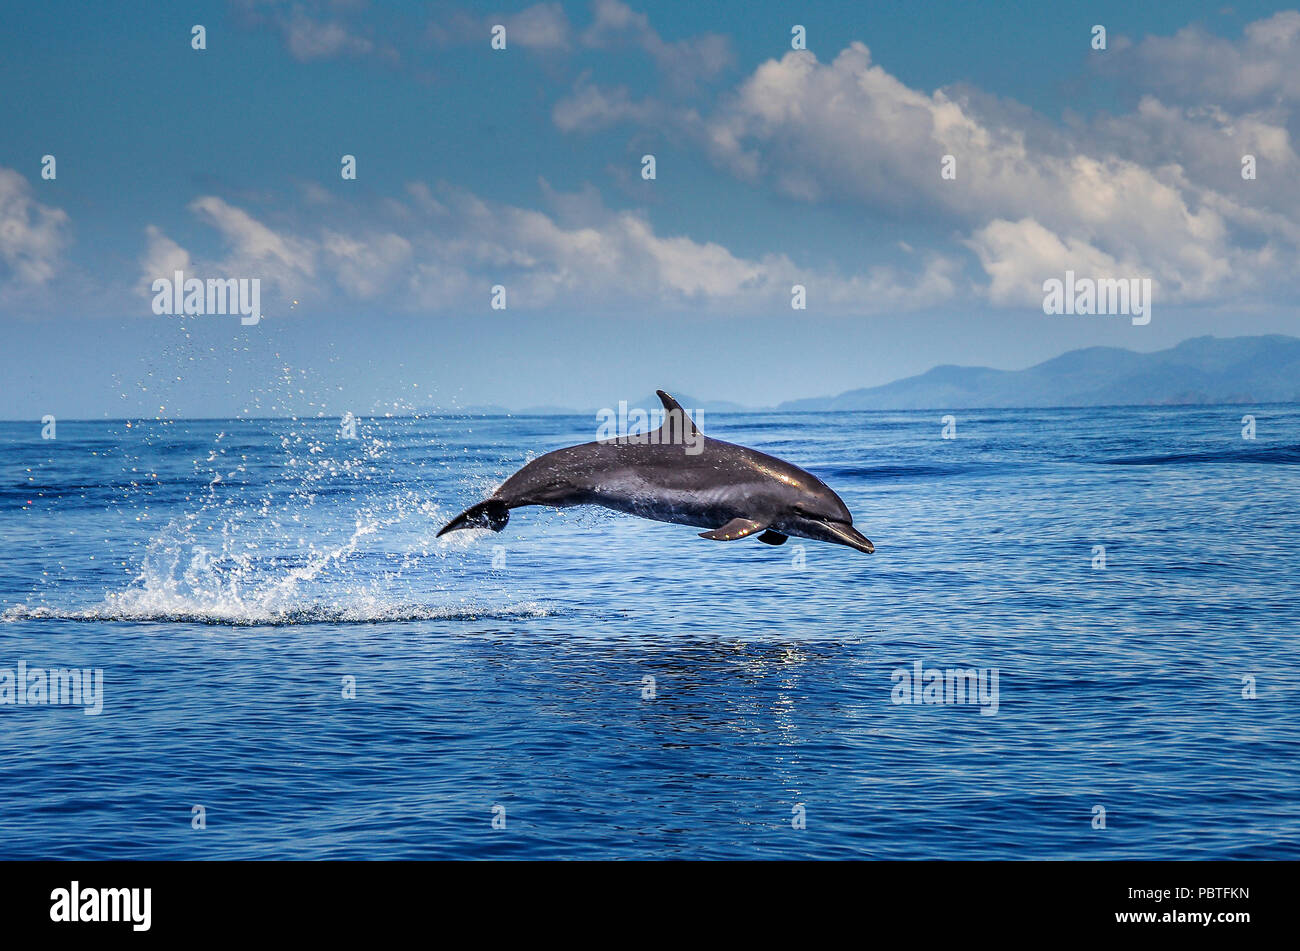 Jumping dolphin Bild in der Nähe von Insel Coiba in Panama Pazifischen Ozean genommen Stockfoto